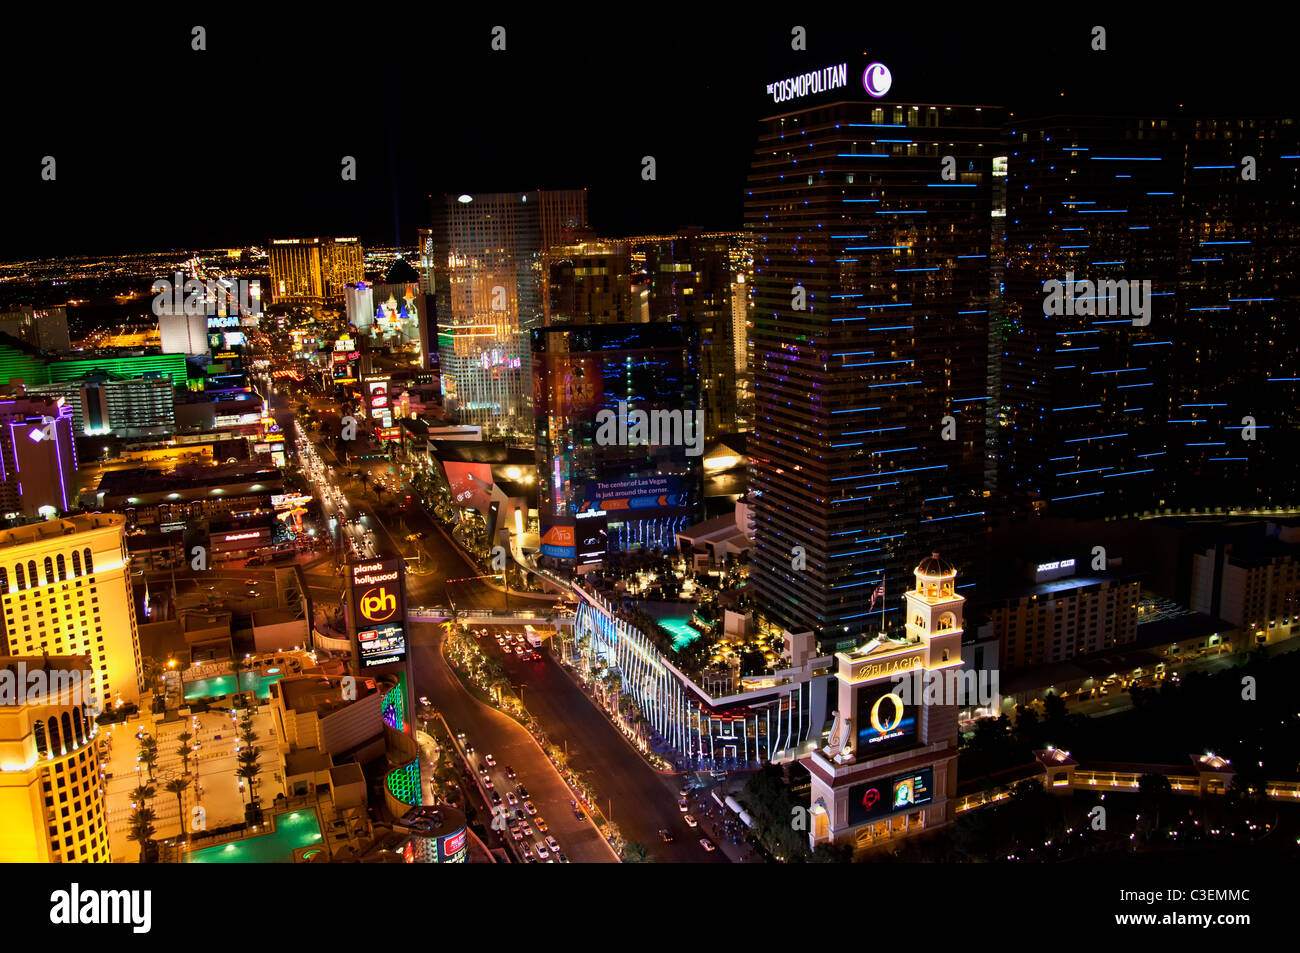 The Cosmopolitan along the Strip, Las Vegas, Nevada. Stock Photo